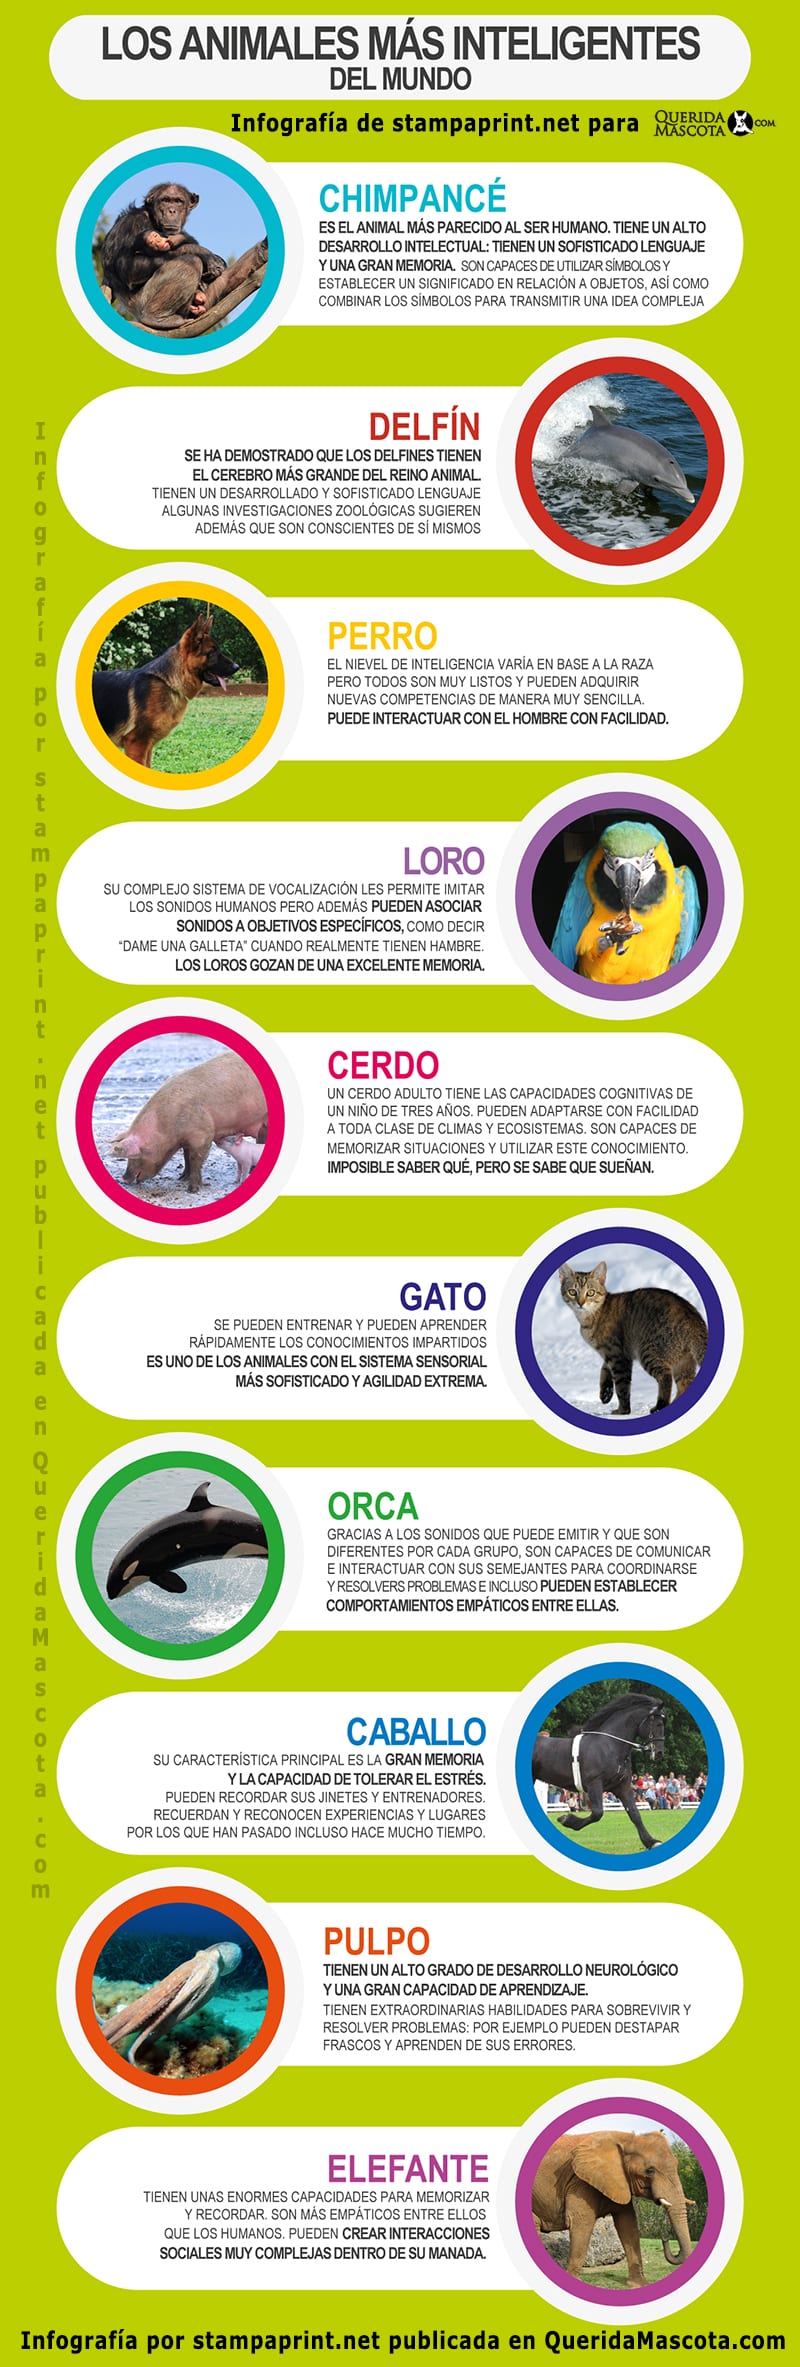 Infografí­a sobre los 10 animales más inteligentes del mundo